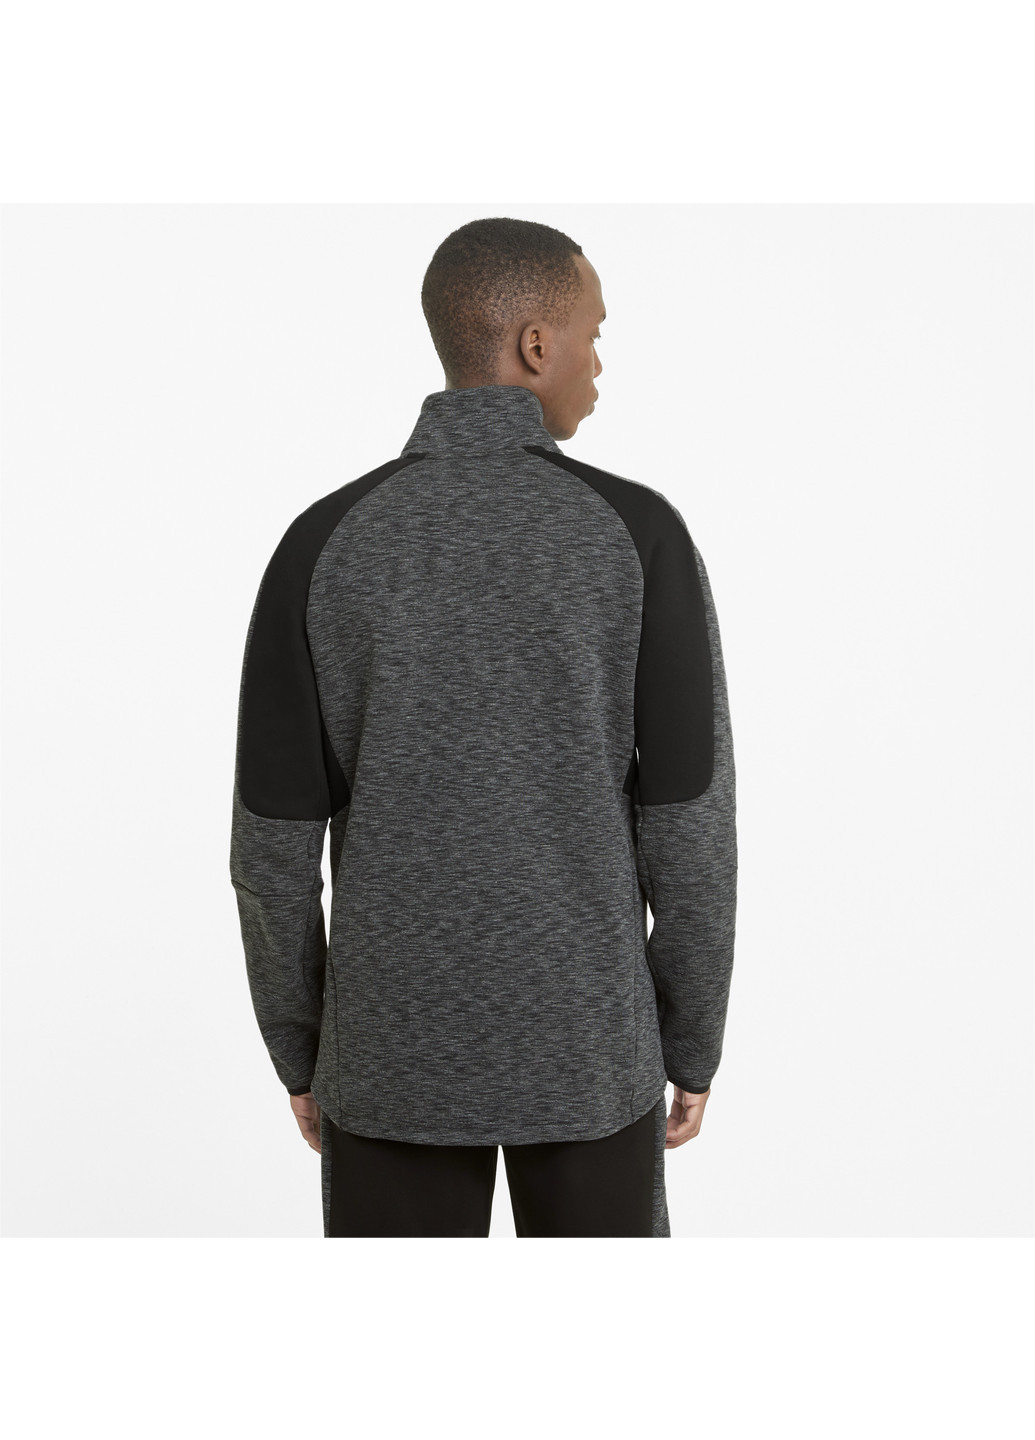 Толстовка Evostripe Half-Zip Men's Sweater Puma однотонная чёрная спортивная хлопок, полиэстер